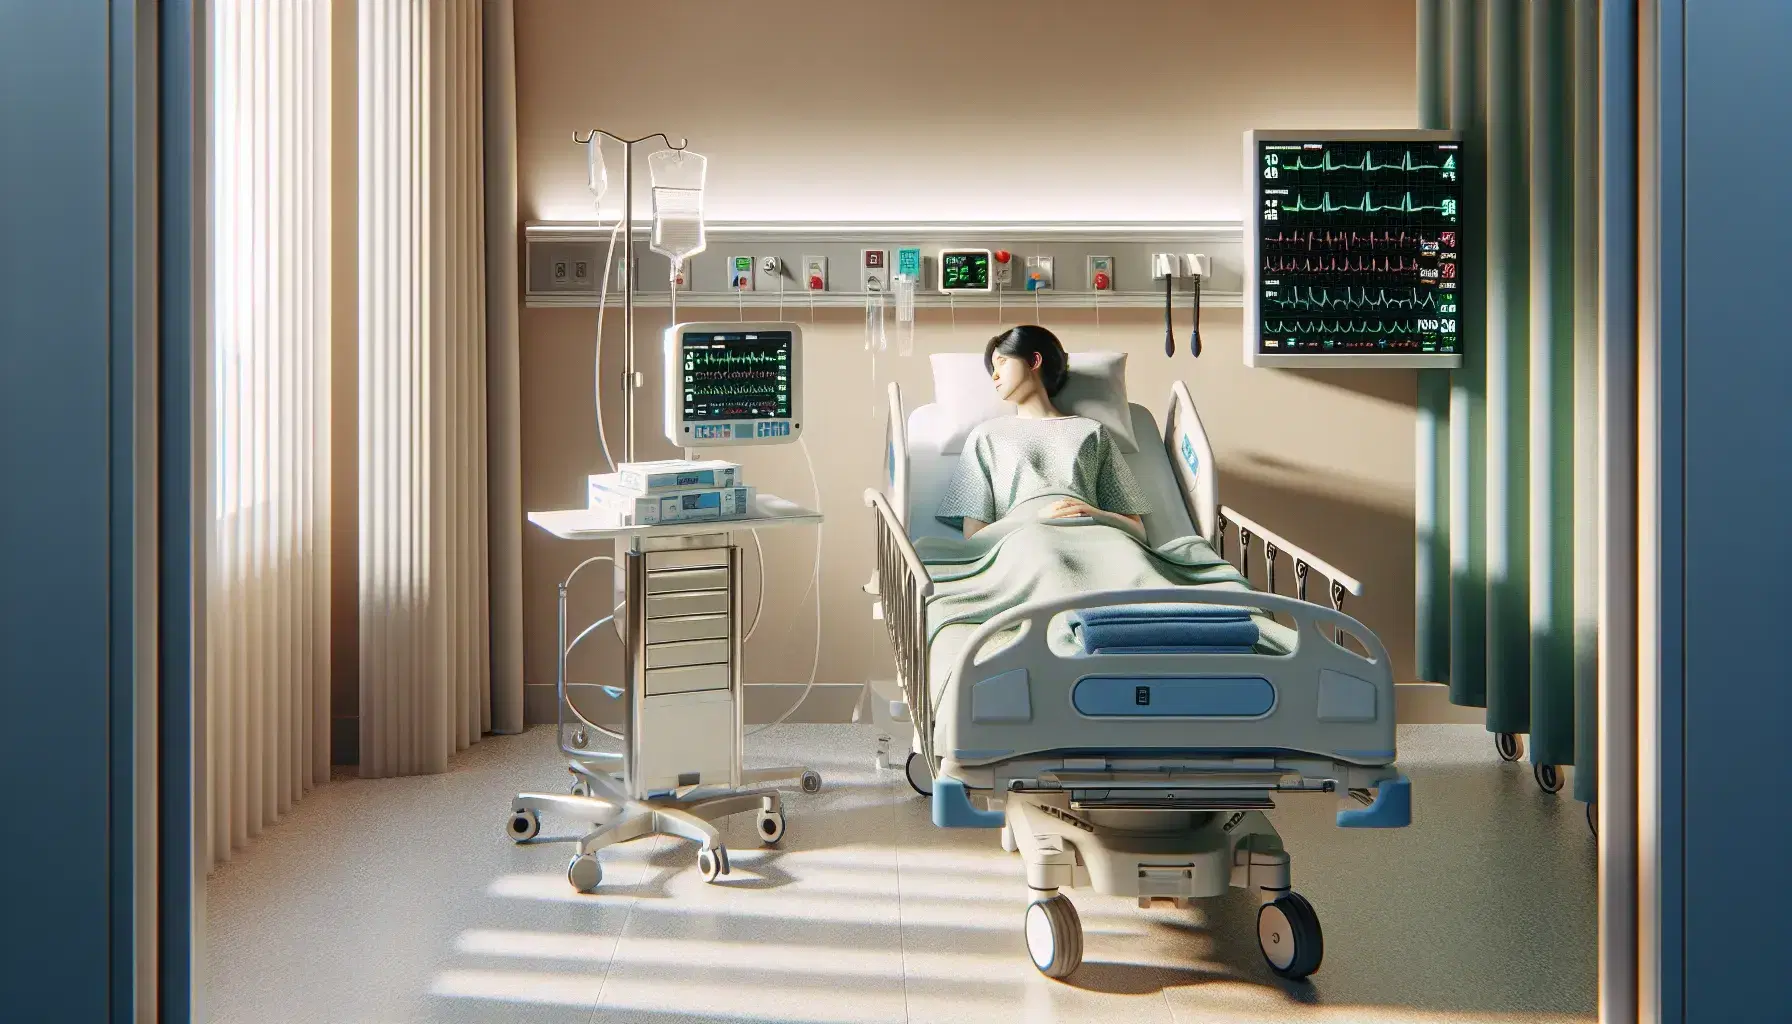 Habitación de hospital con paredes beige y suelo de baldosas blancas y grises, cama con paciente en bata verde, monitor médico y profesional de la salud atendiendo.